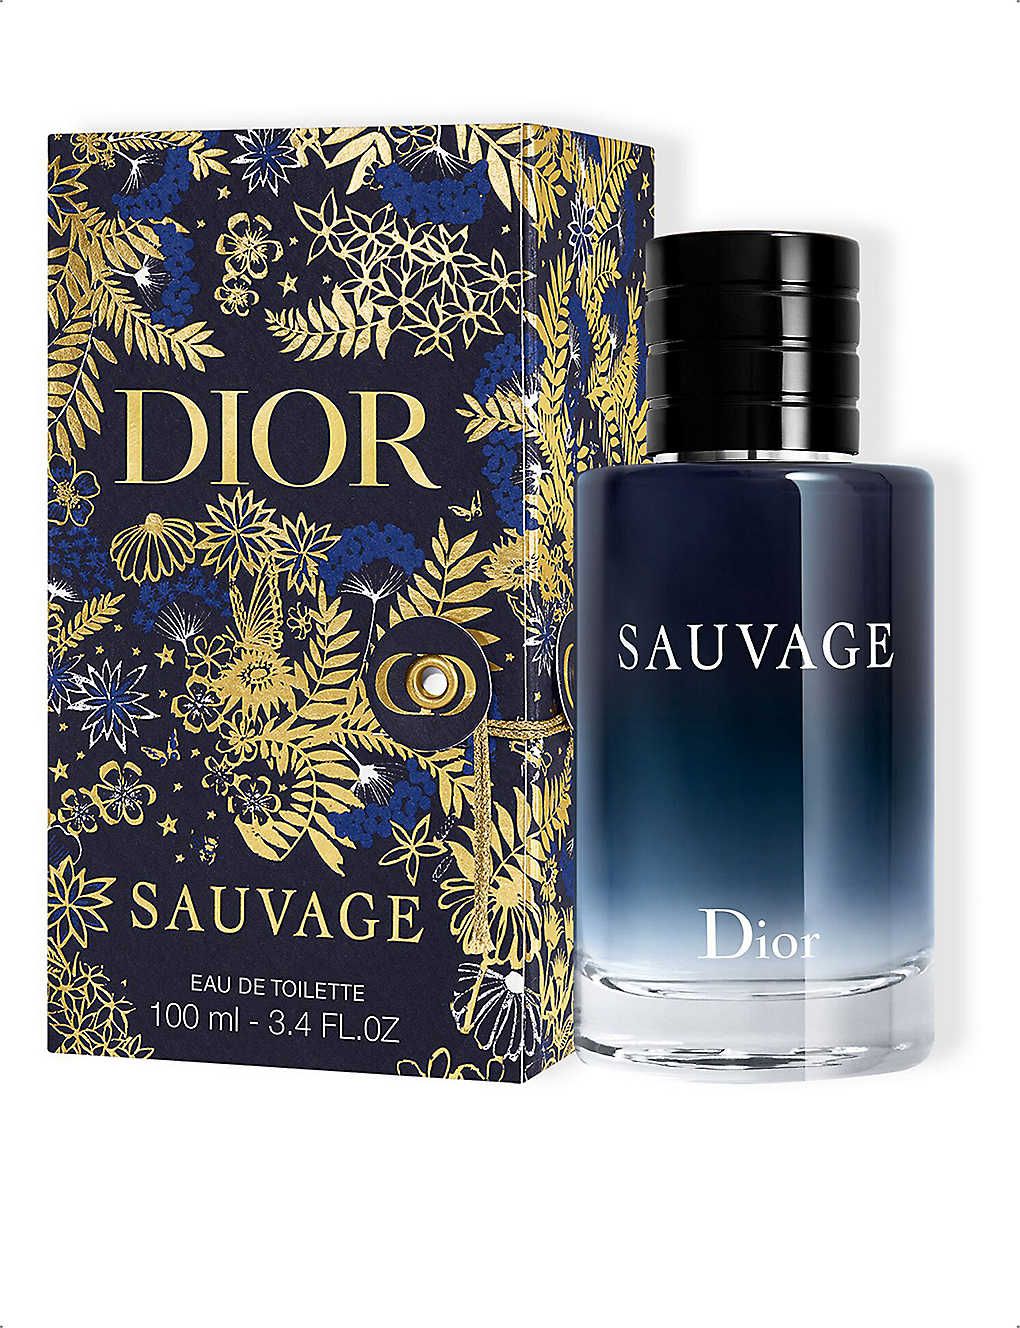 Dior Sauvage limited-edition eau de toilette 100ml | Selfridges